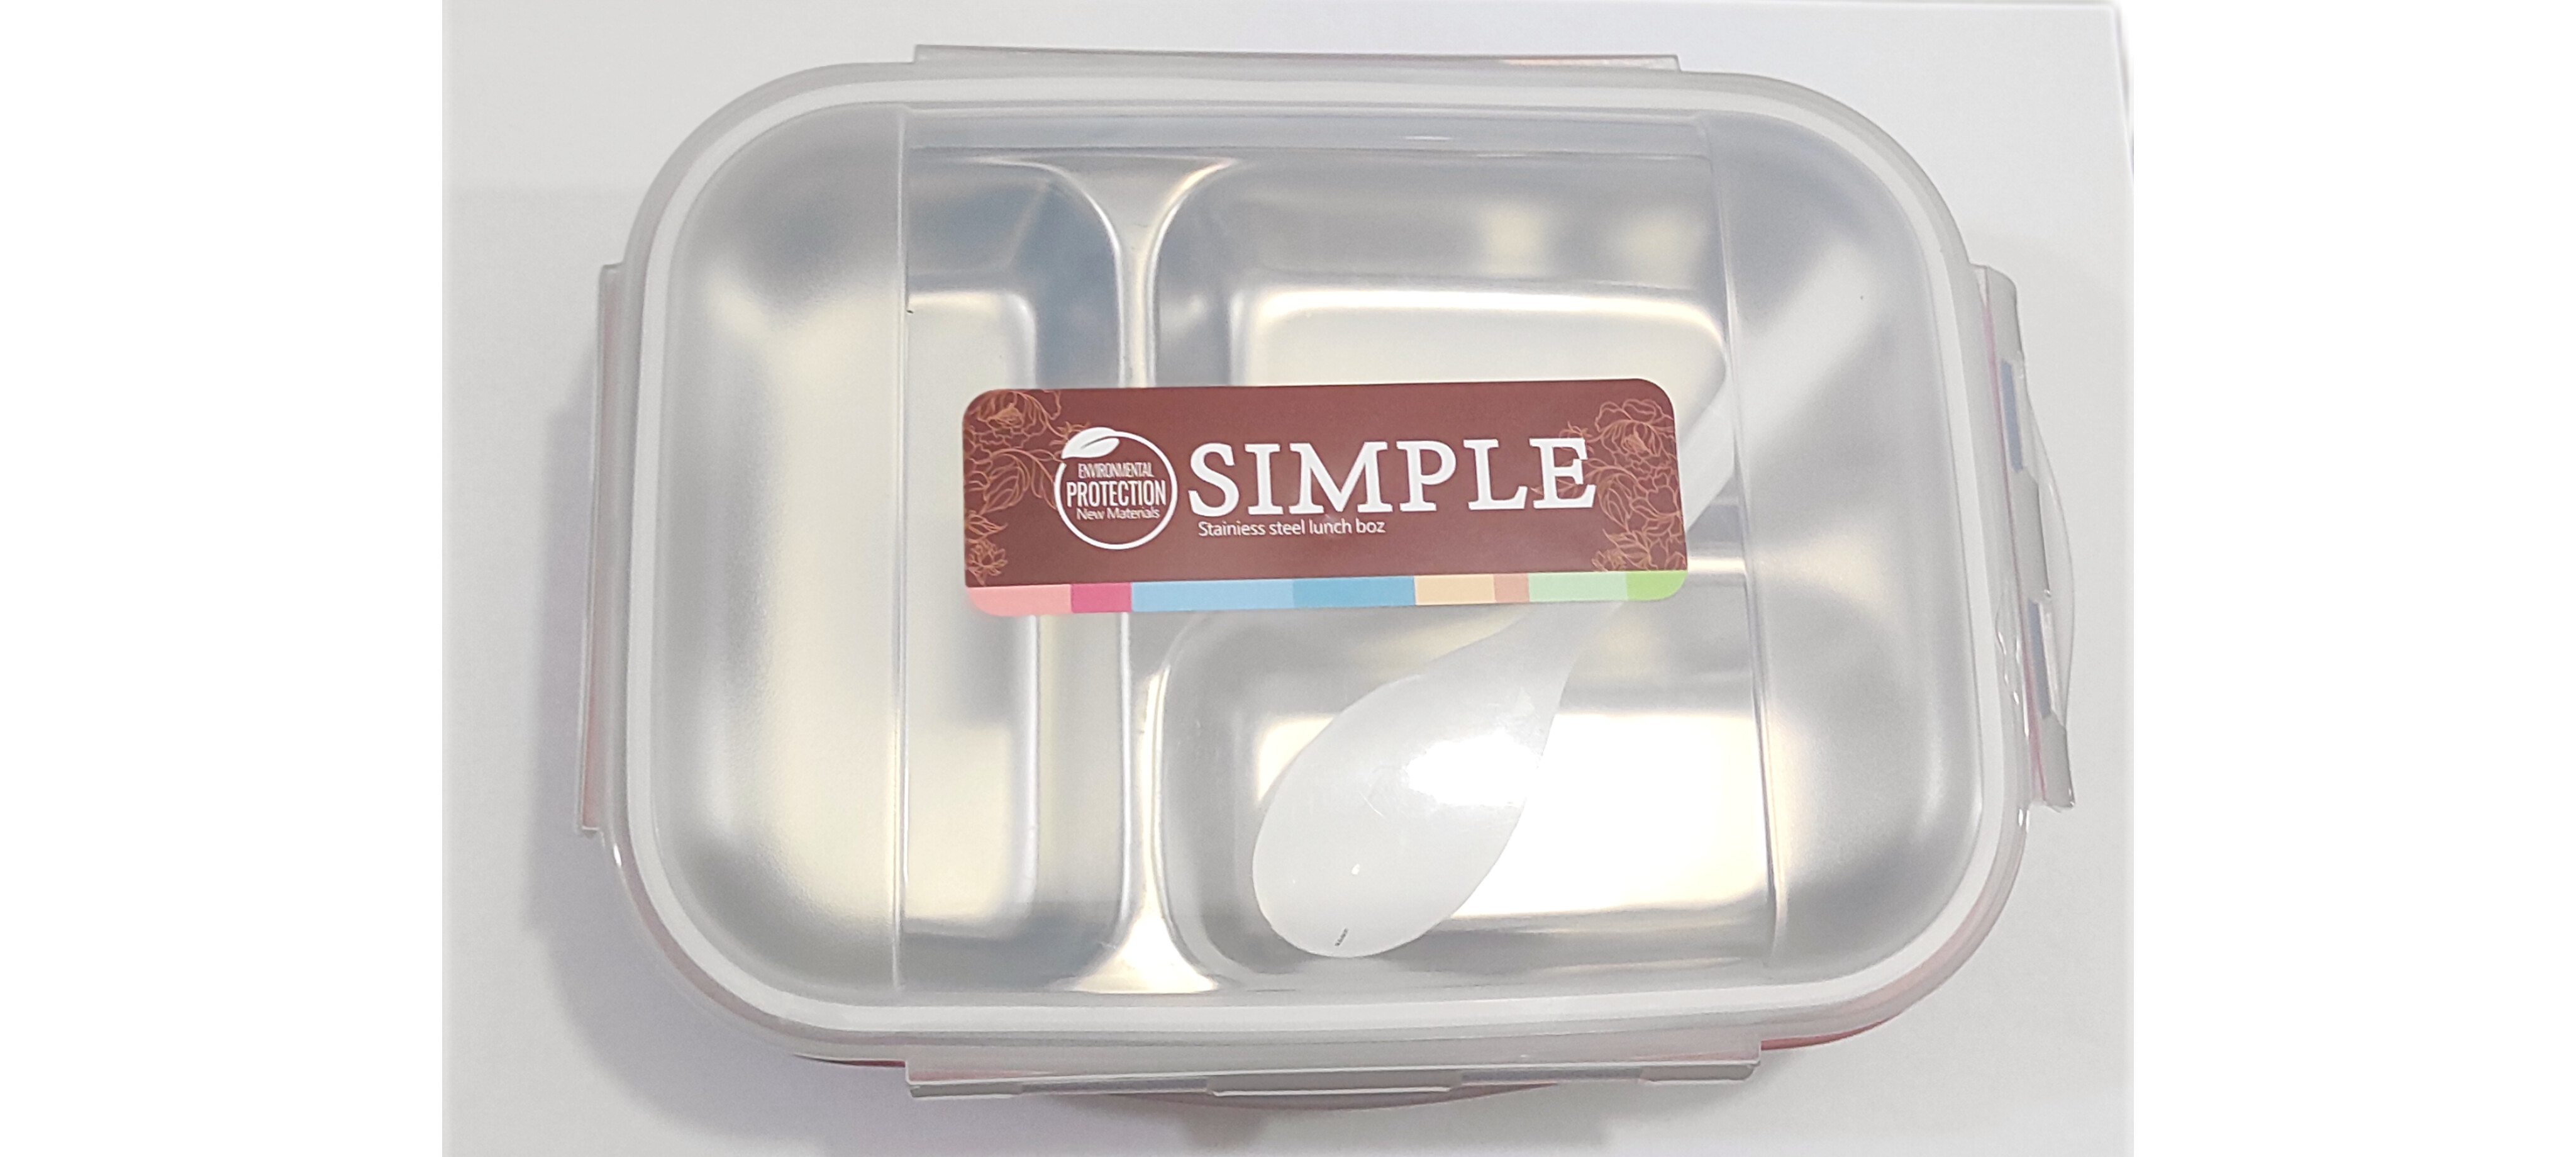 ظرف غذا SIMPLE-Lnch box استیل مدل سه خانه با قاشق